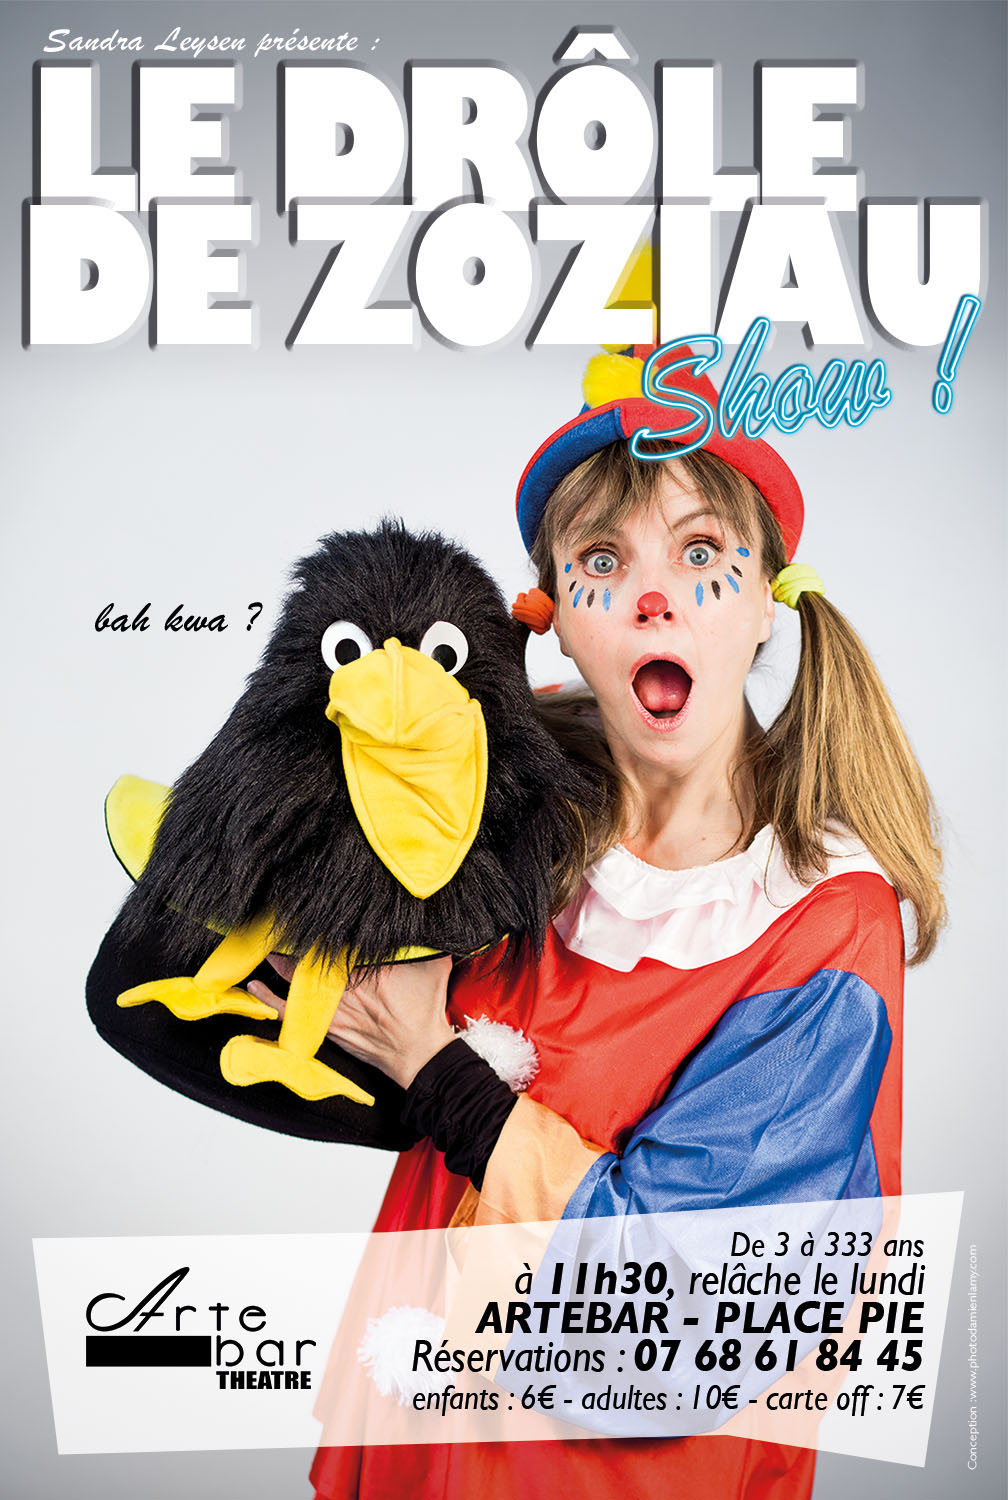 Spectacle interactif, clown, magique et ventriloque "Le drôle de Zoziau Show" pour faire rire petits et grands!